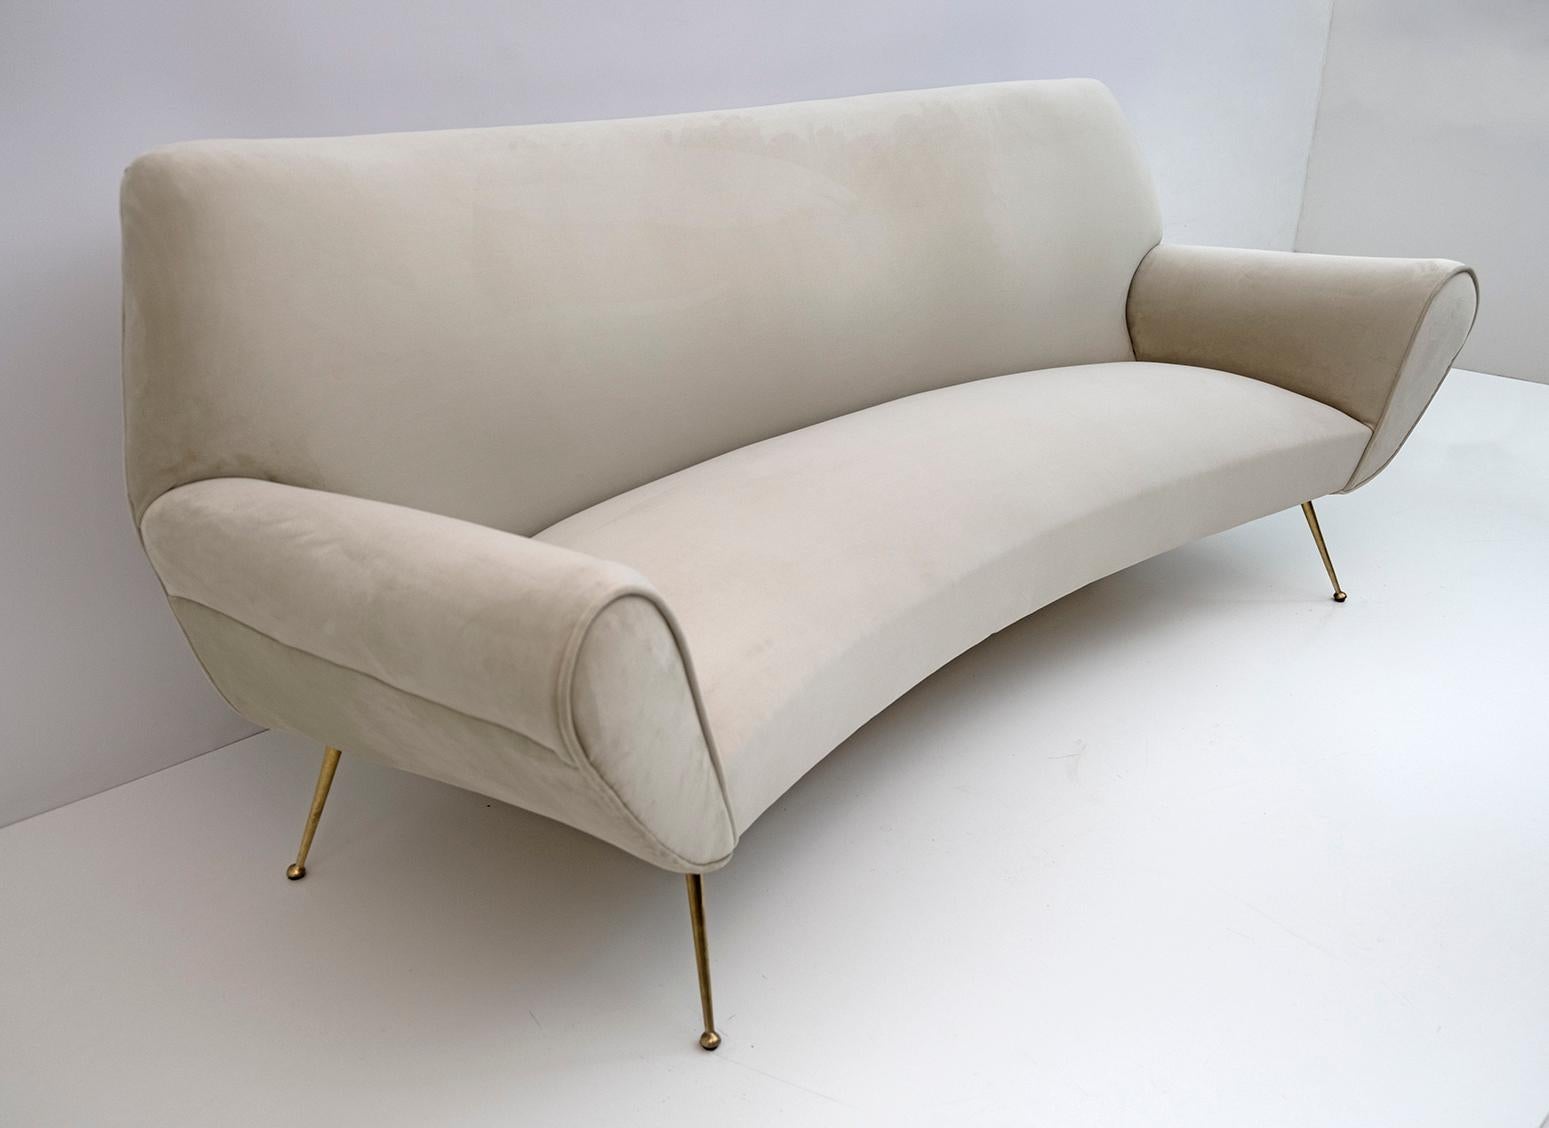 Brass Gigi Radice Mid-Century Modern Italian Velvet Curved Sofa for Minotti, 1950s For Sale